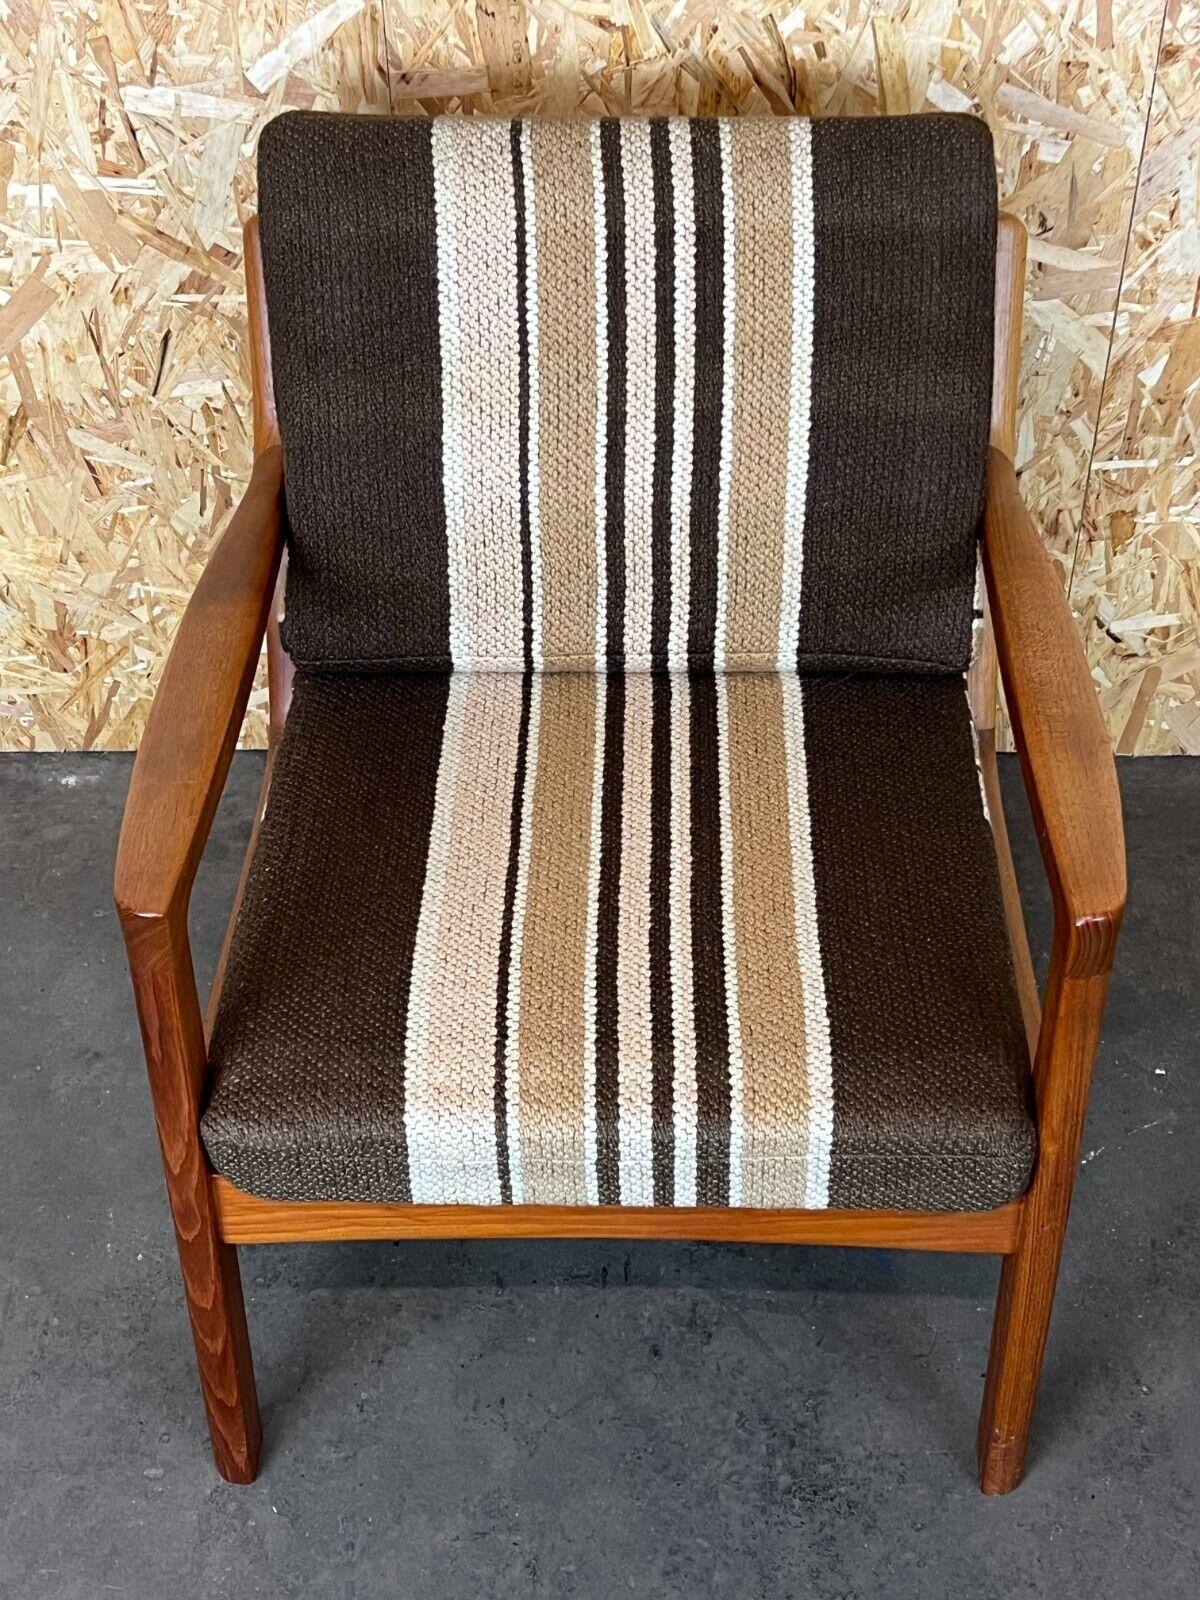 Late 20th Century 1960s-1970s Teak Easy Chair Ole Wanscher Cado France & Son Denmark For Sale